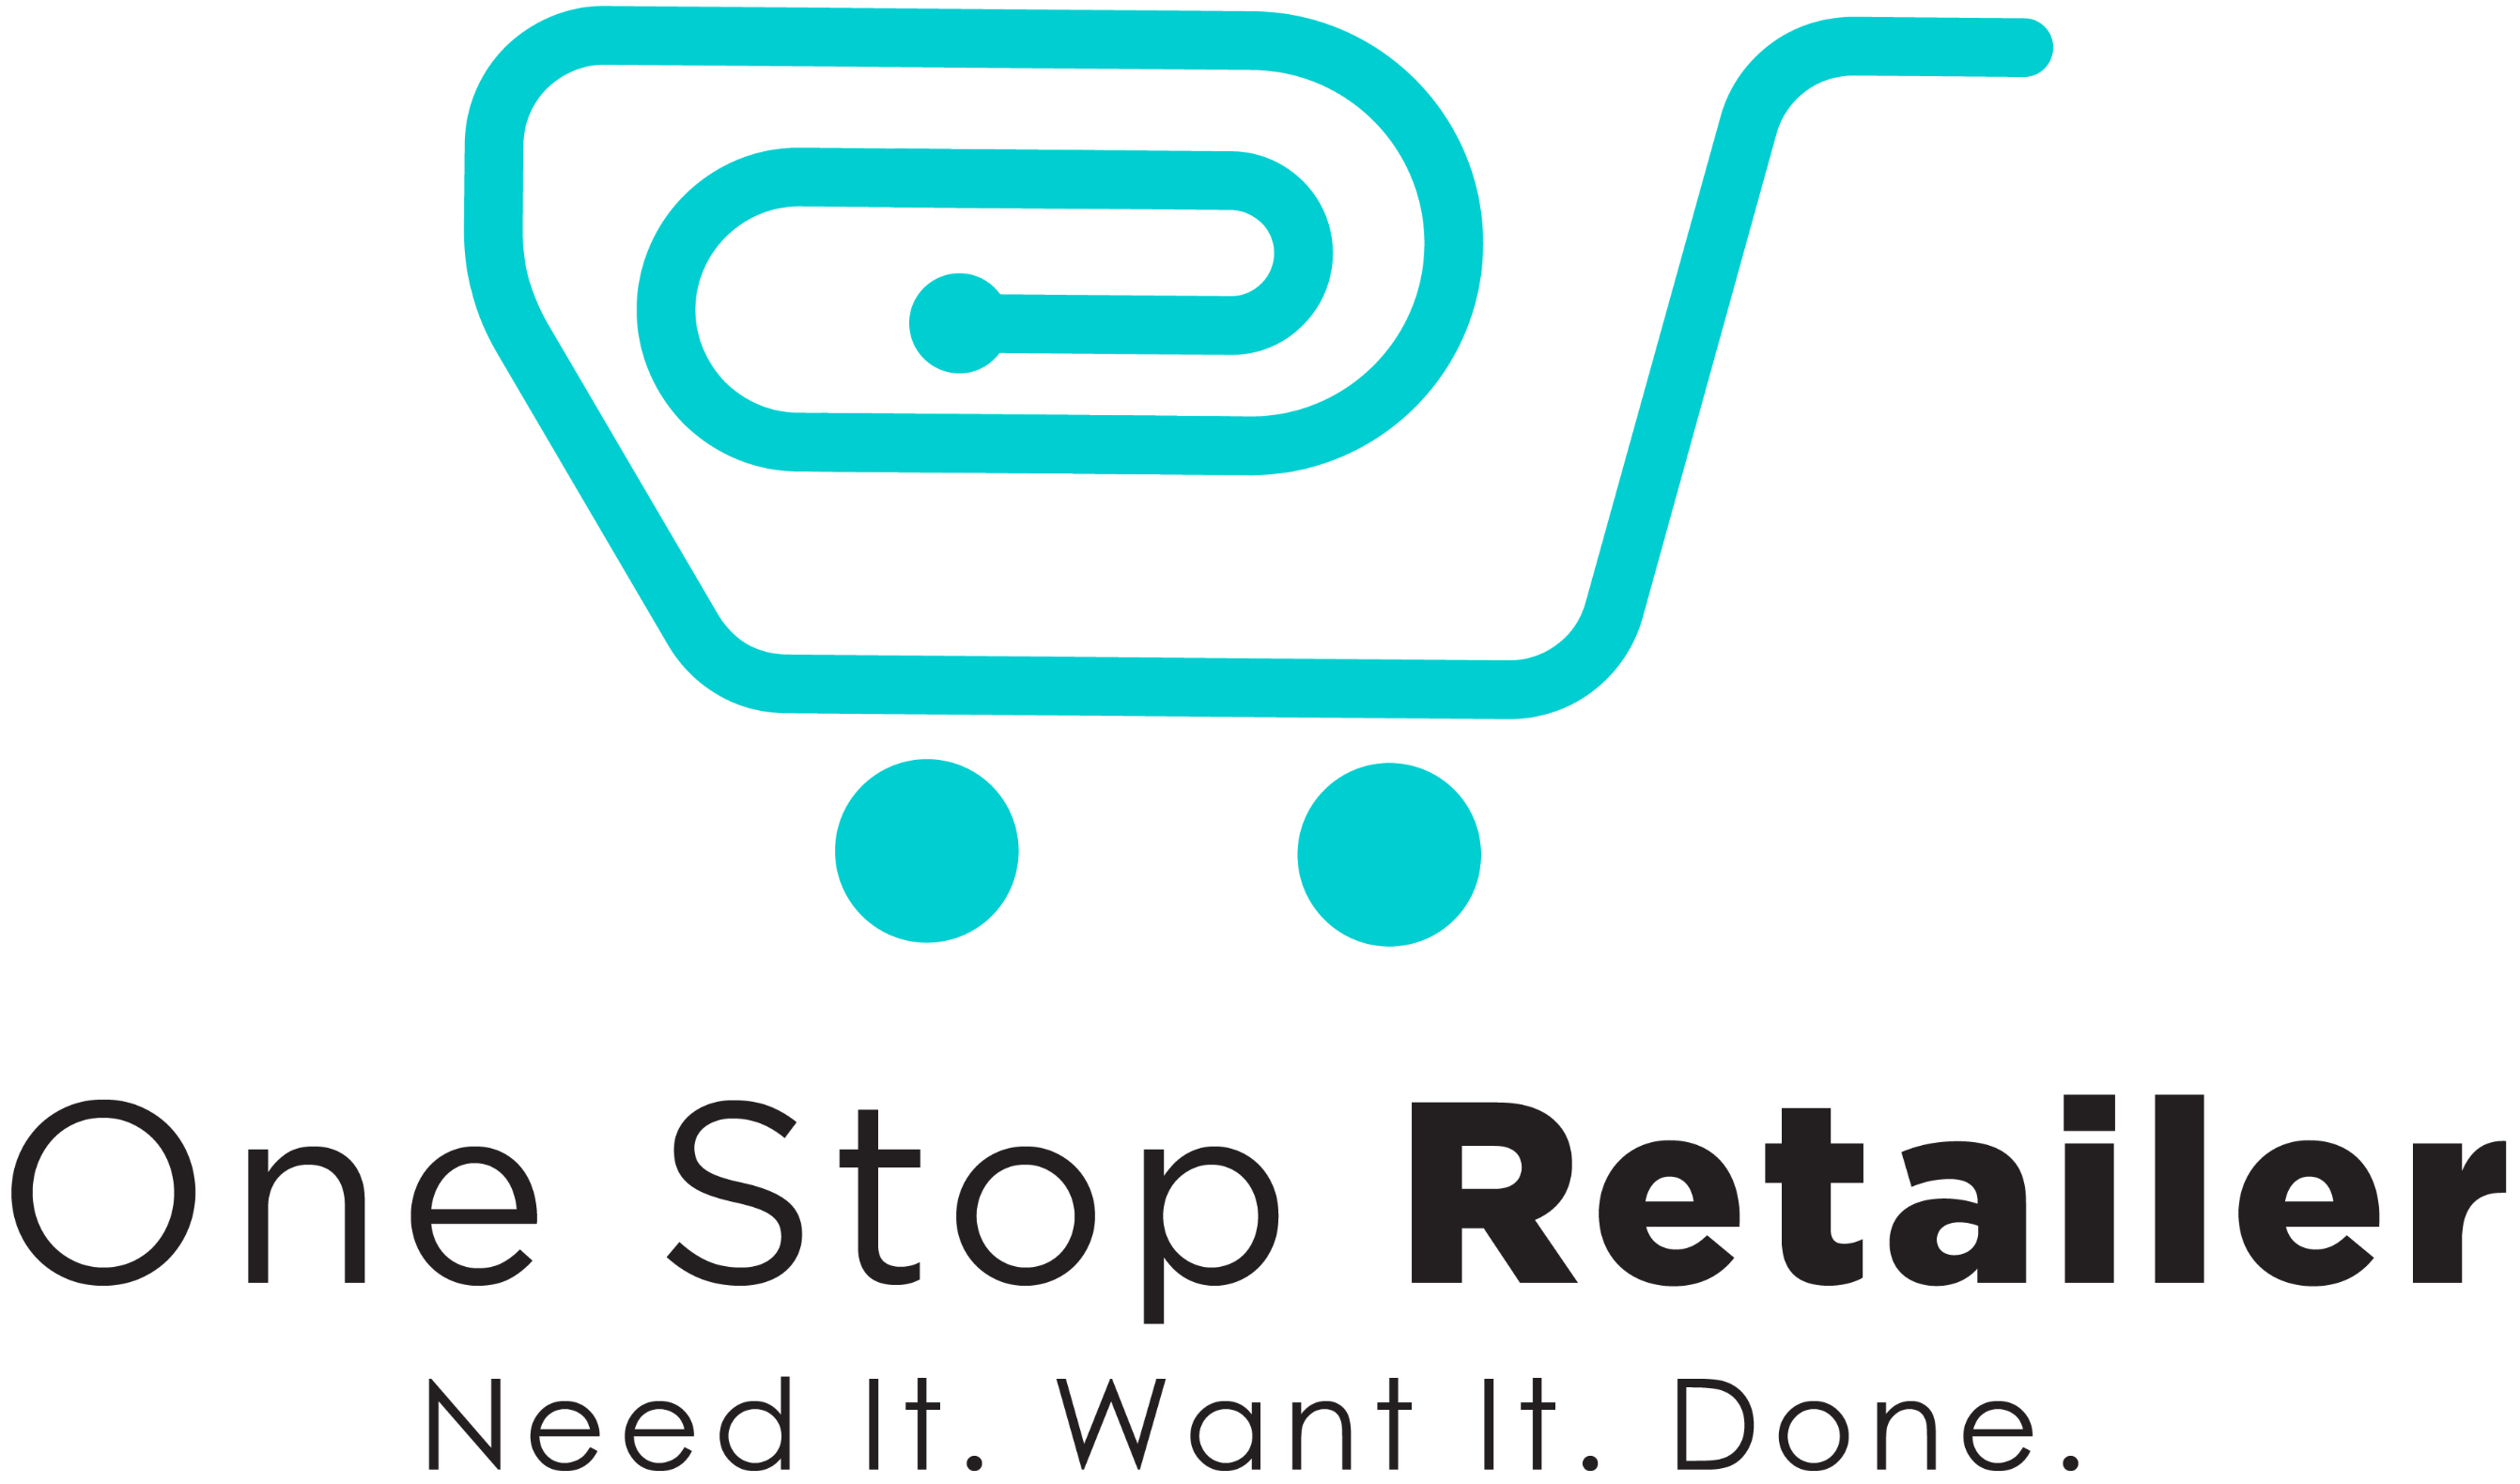 One Stop Retailer